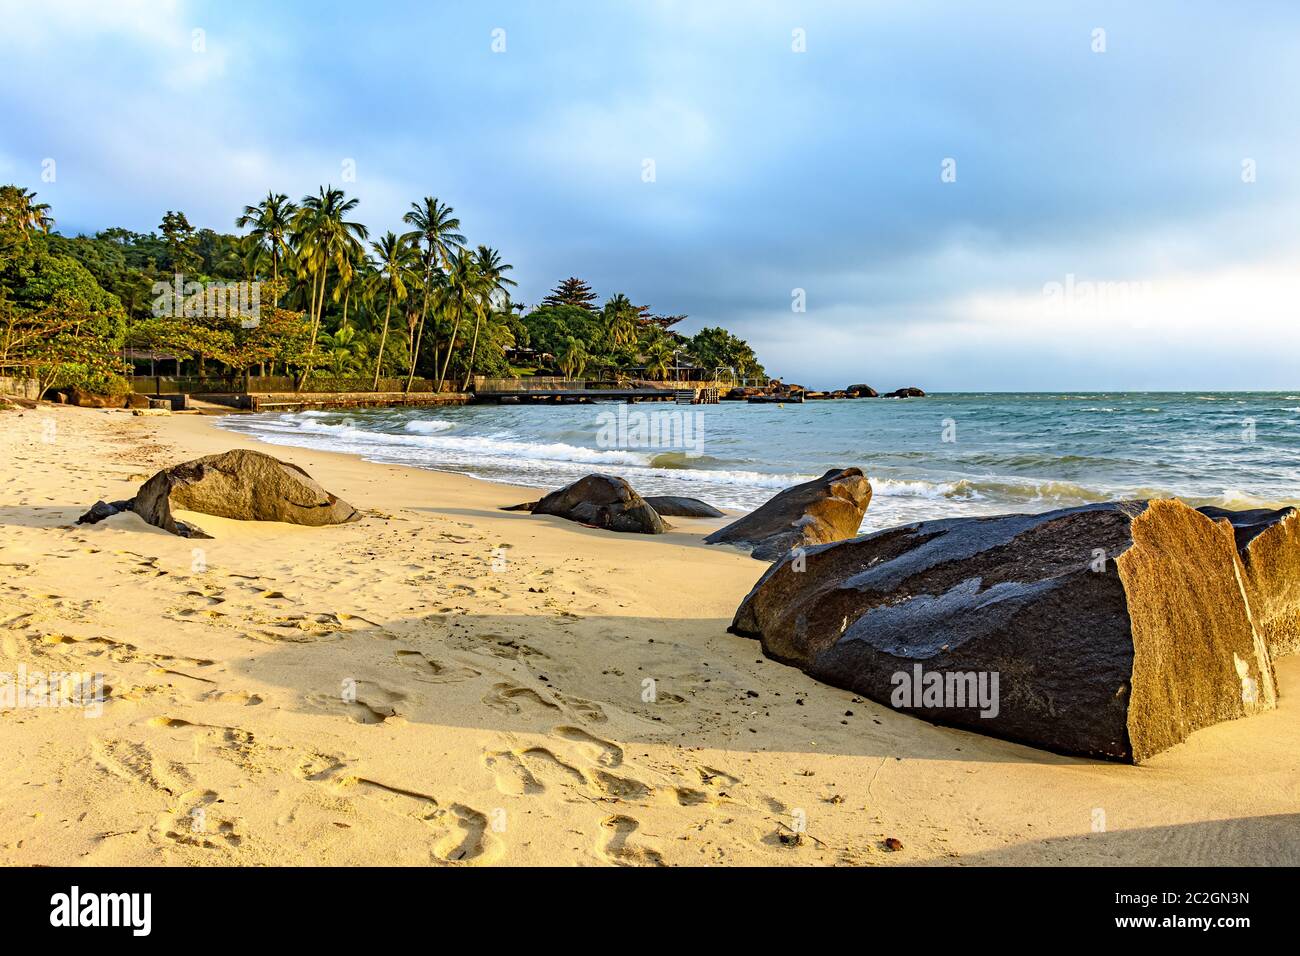 Spiaggia sull'isola di Ilhabela uno dei principali punti turistici della costa del Brasile Foto Stock